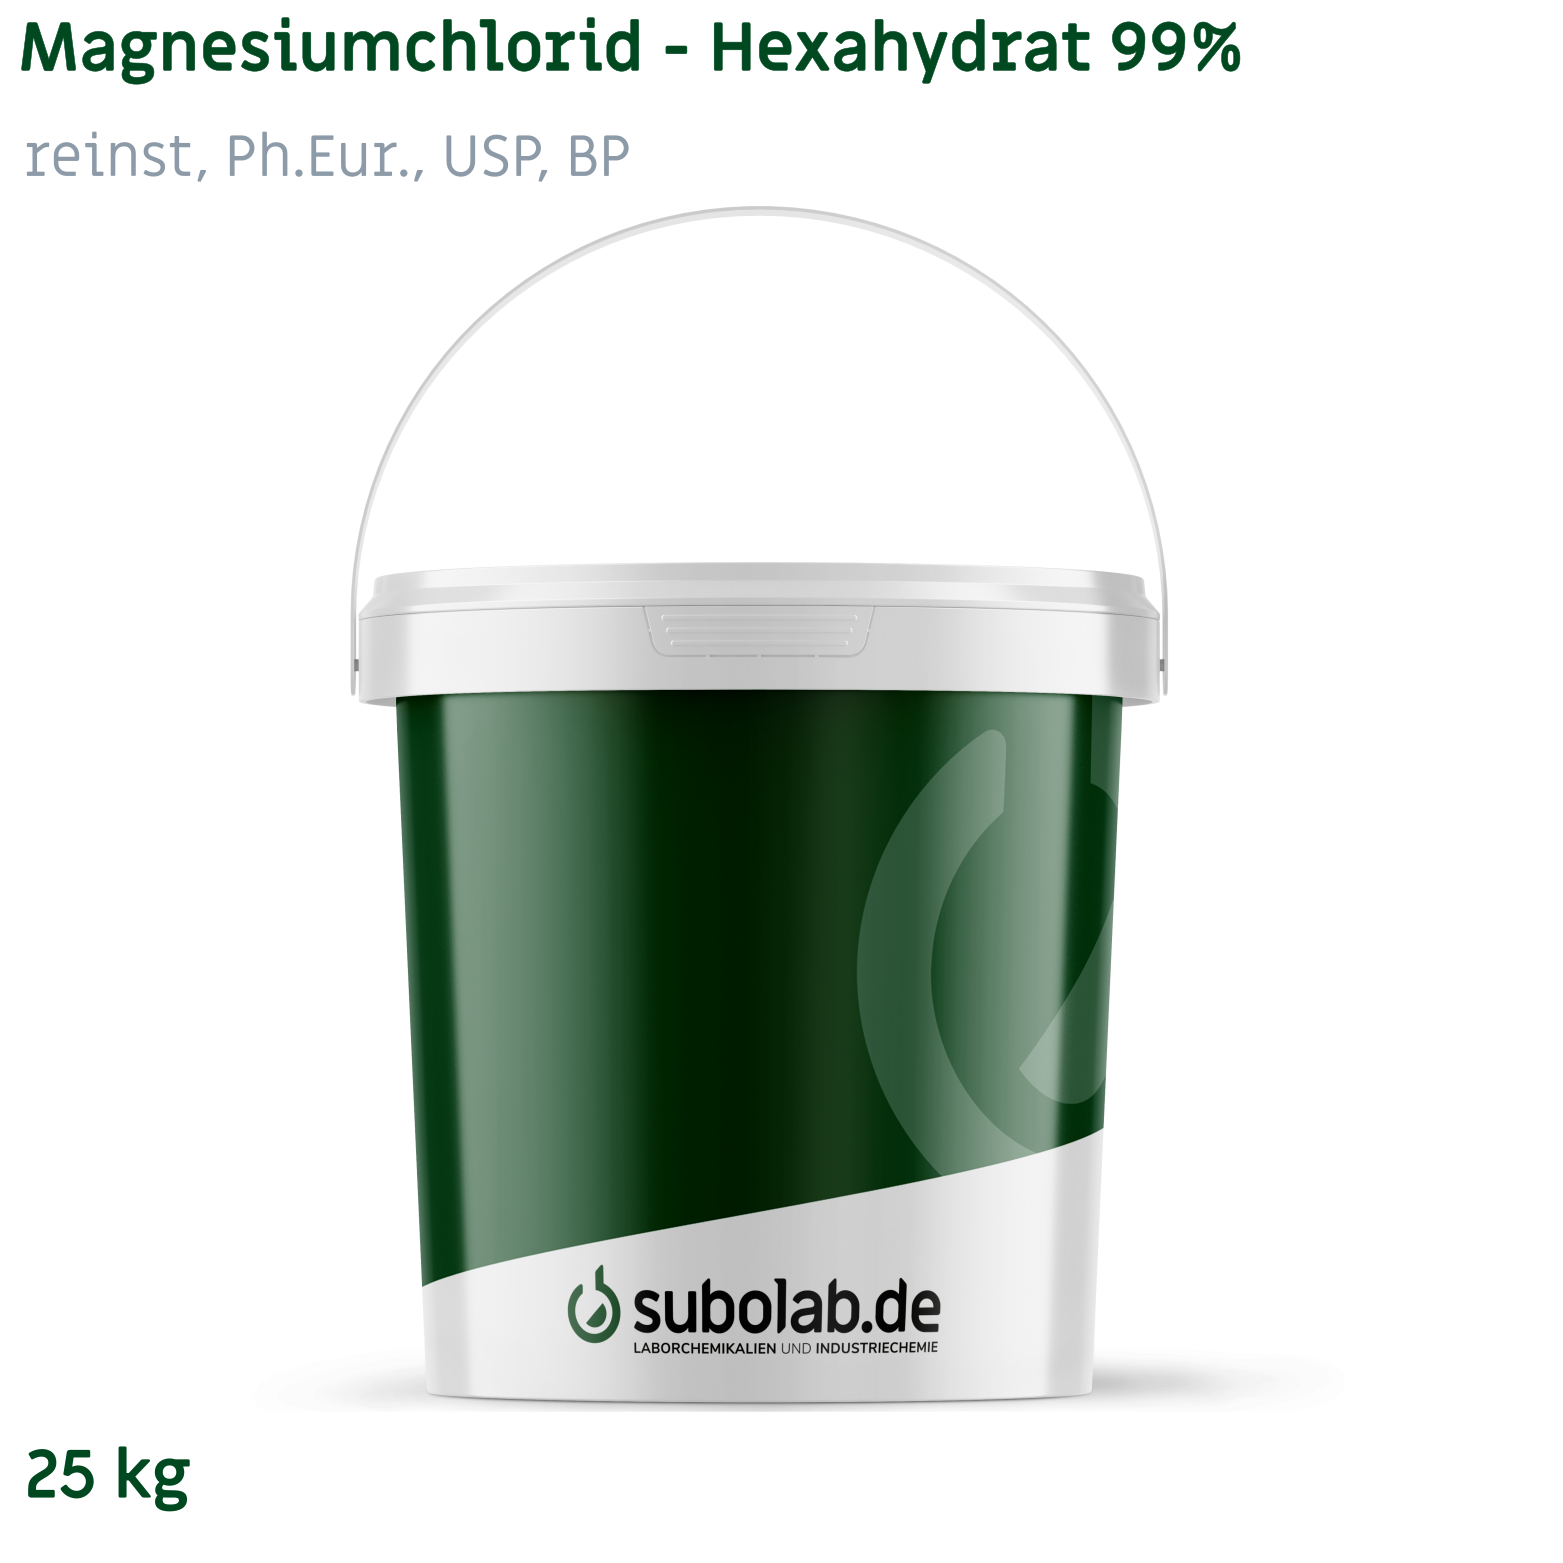 Bild von Magnesiumchlorid - Hexahydrat 99% reinst, Ph.Eur., USP, BP (25 kg)